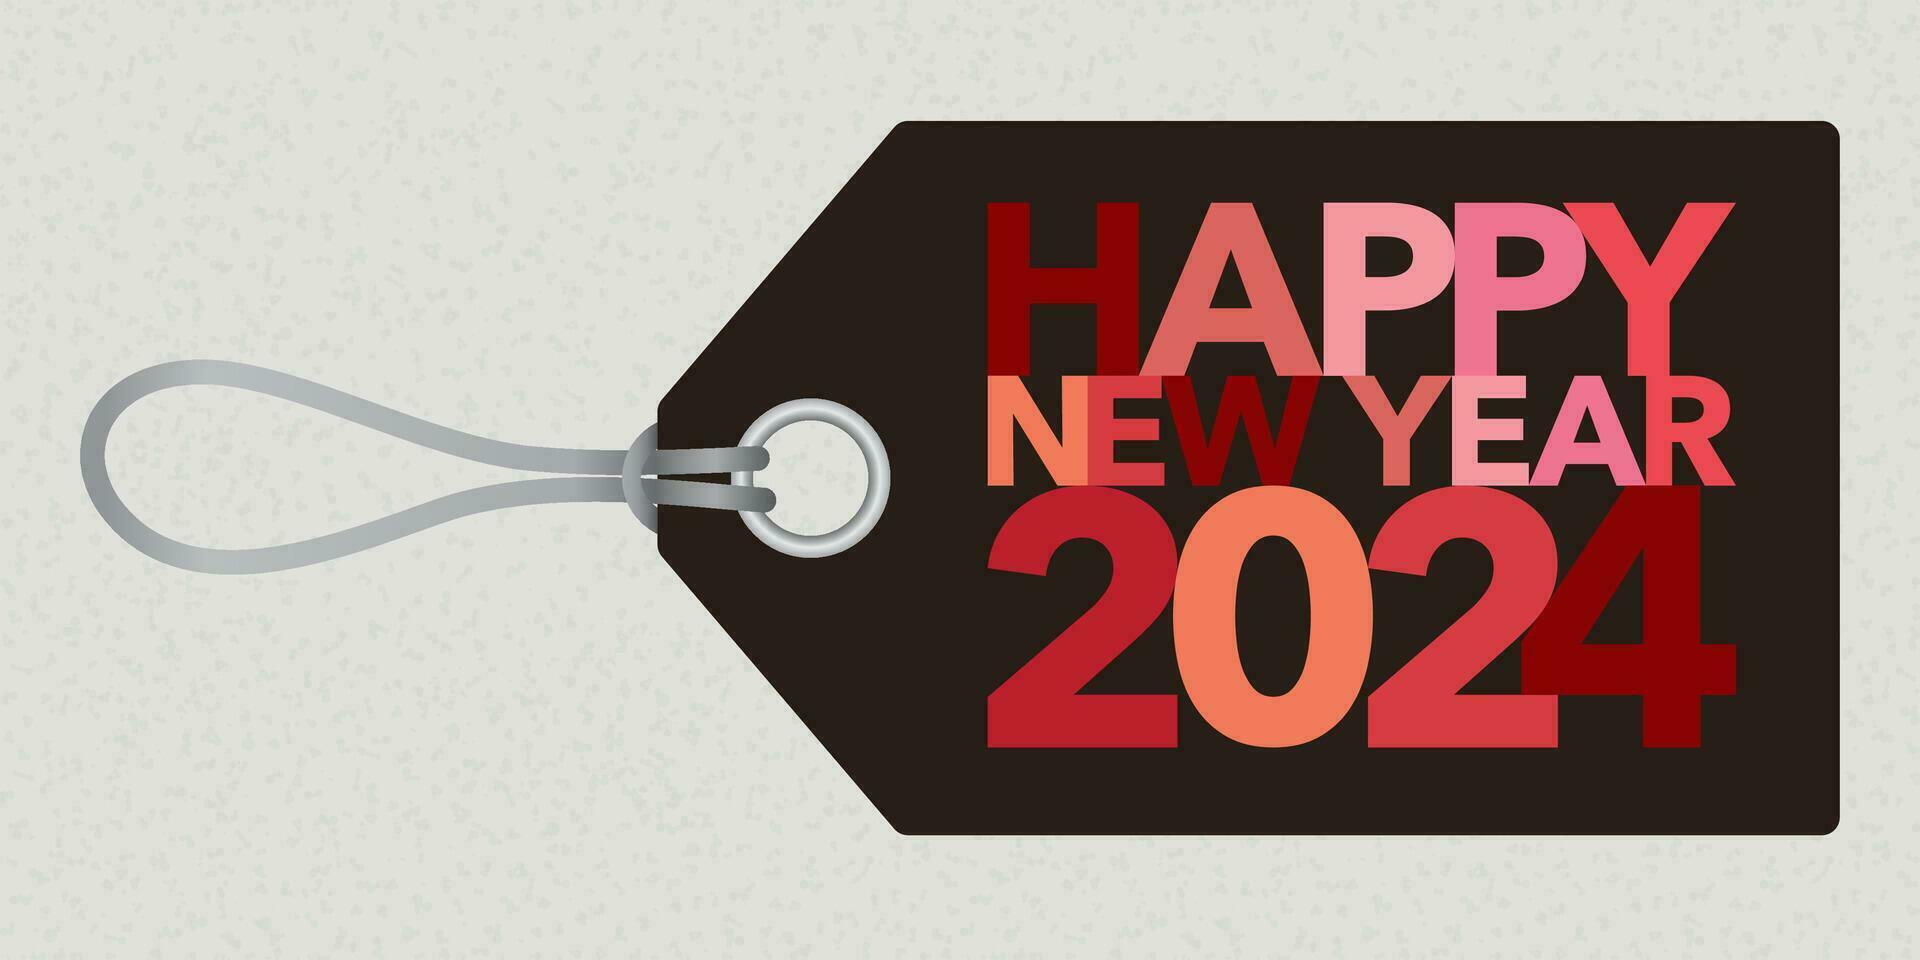 vistoso contento nuevo año 2024 caligrafía en etiqueta plano diseño vector ilustración.